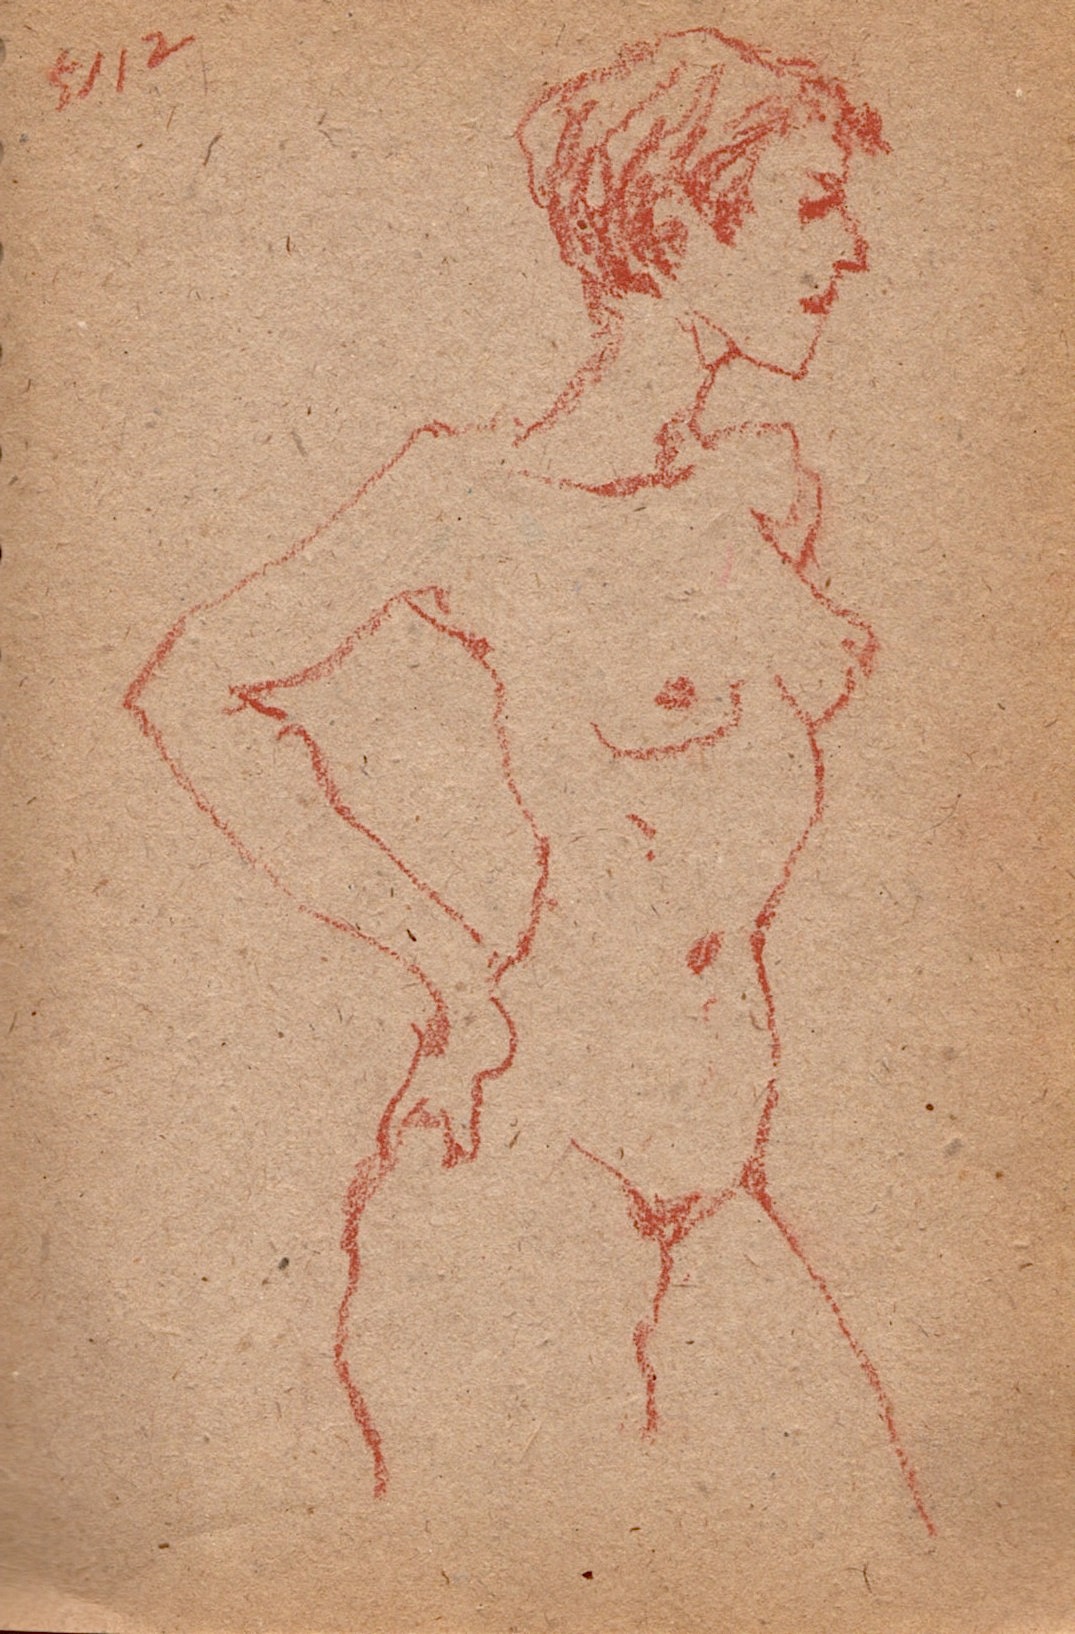 nude drawings